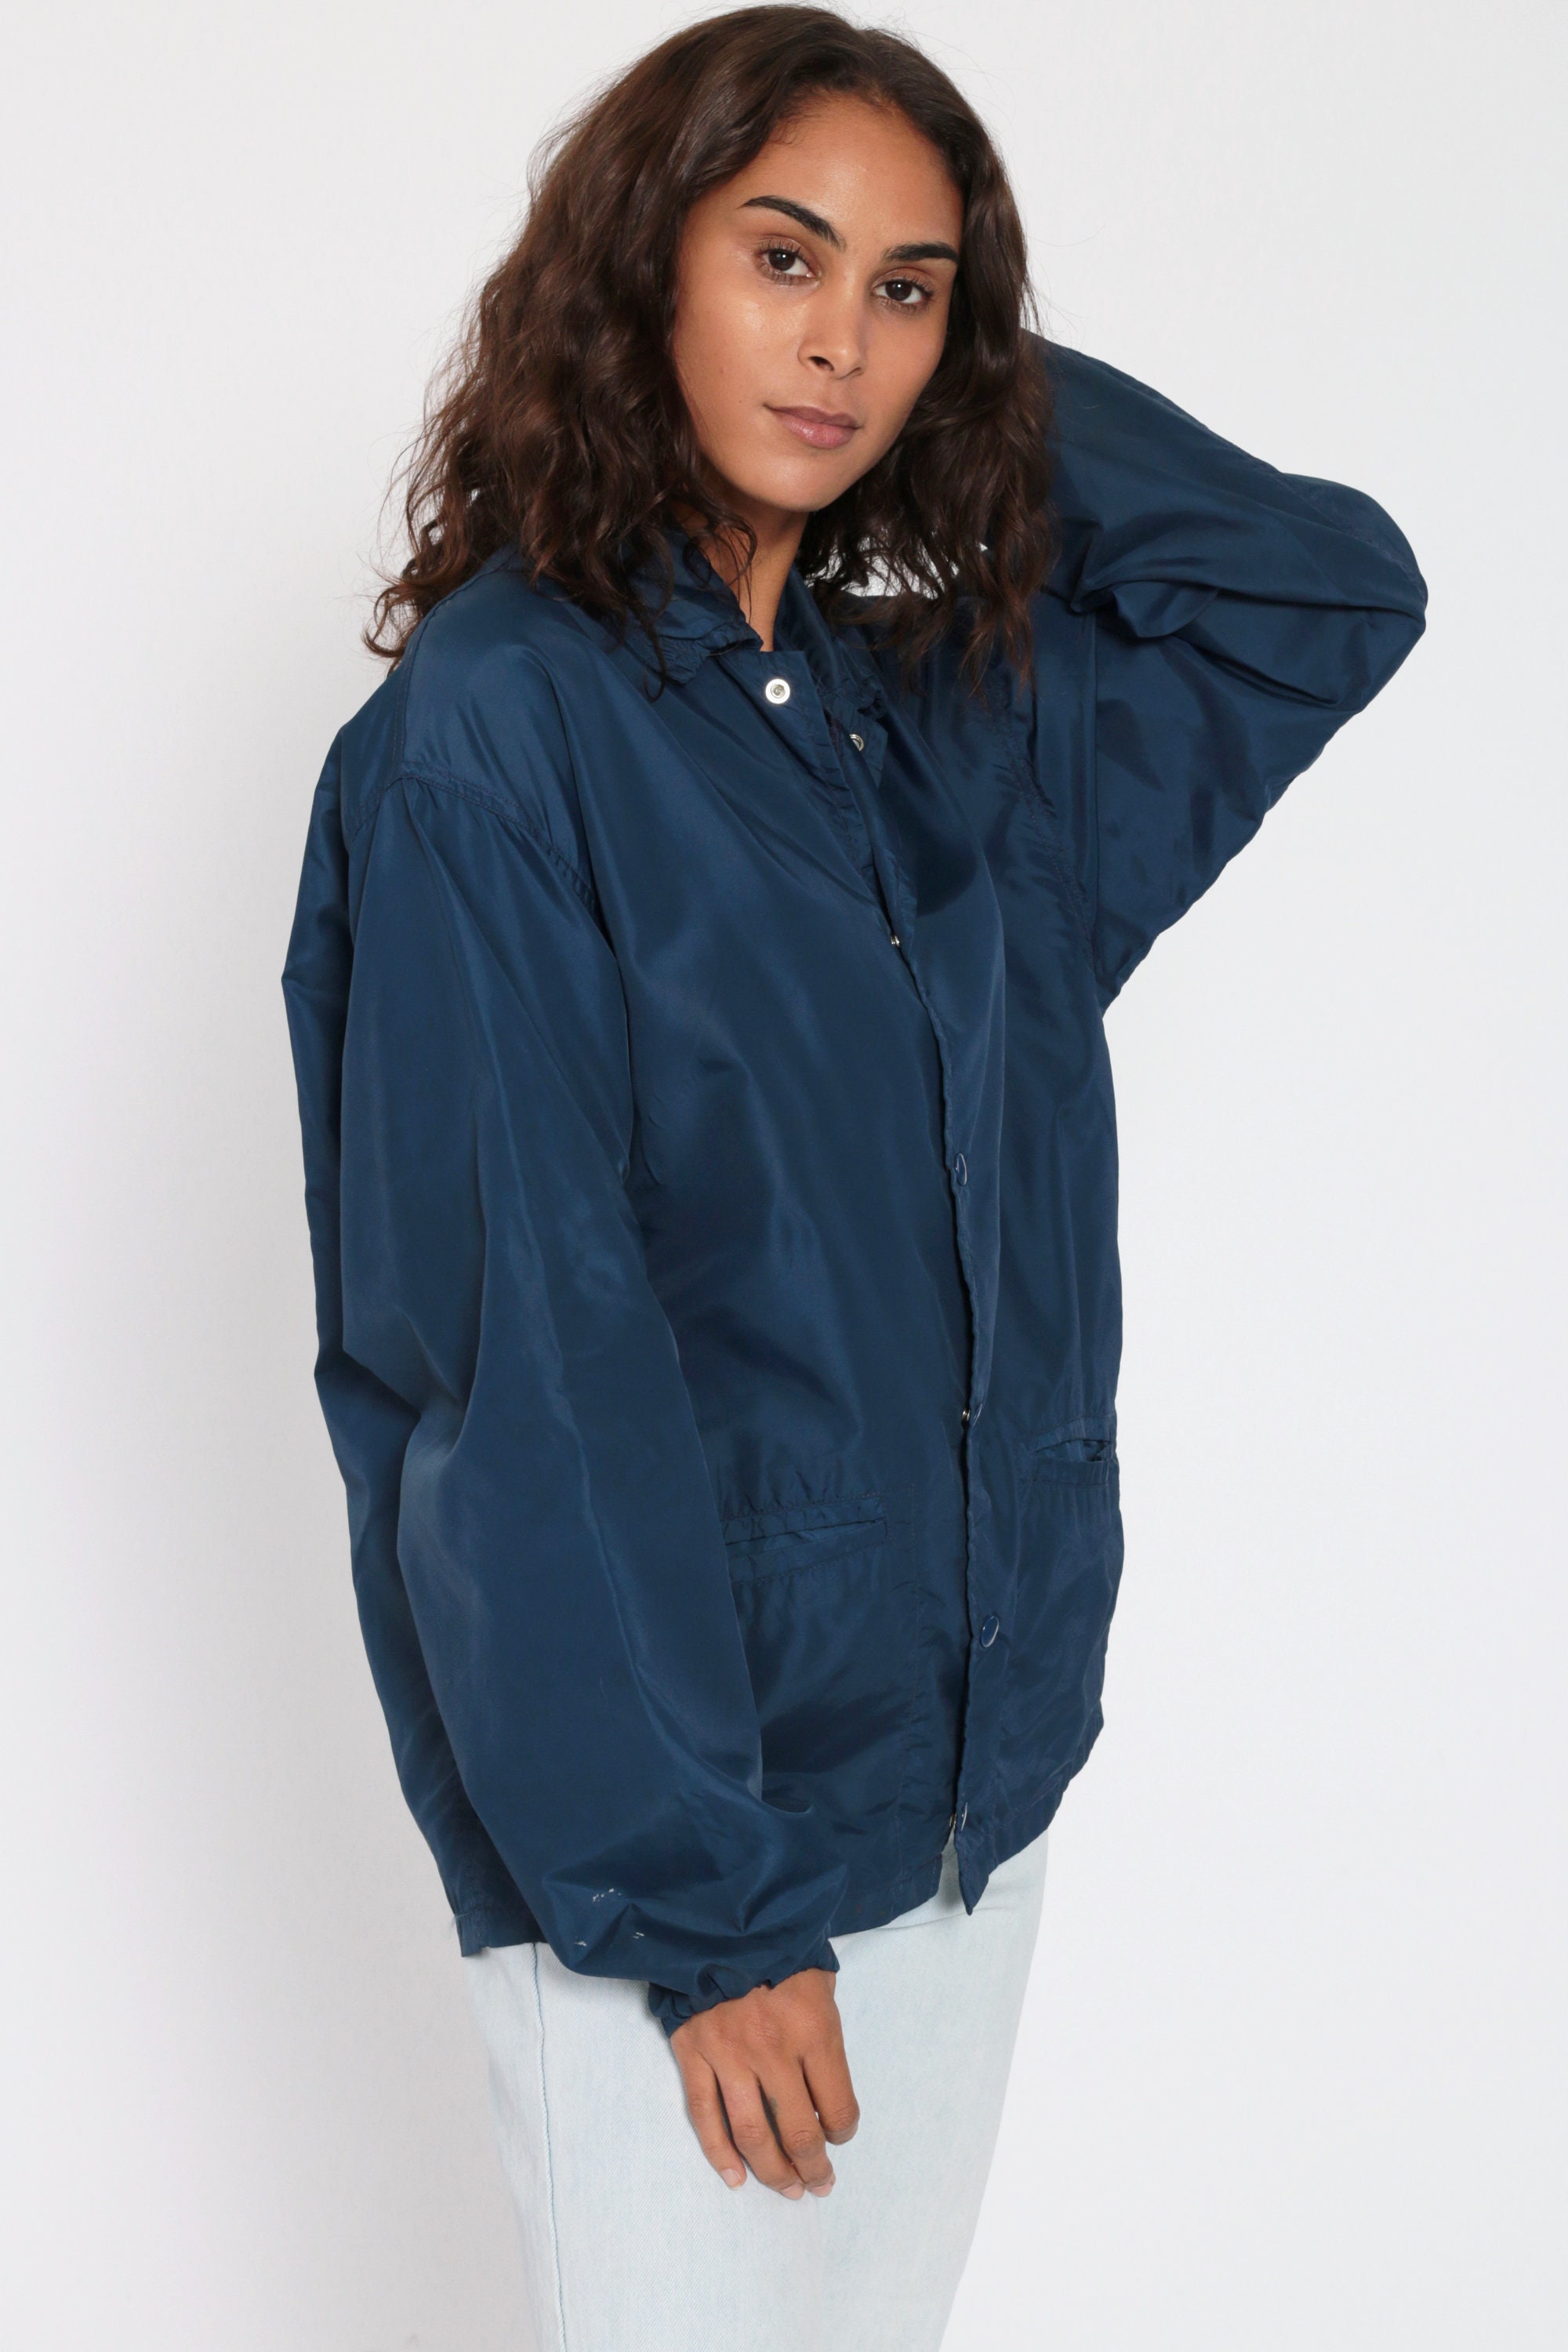 80s Nylon Jacket Blue Sportswear Windbreaker Navy Blue Coach | Etsy